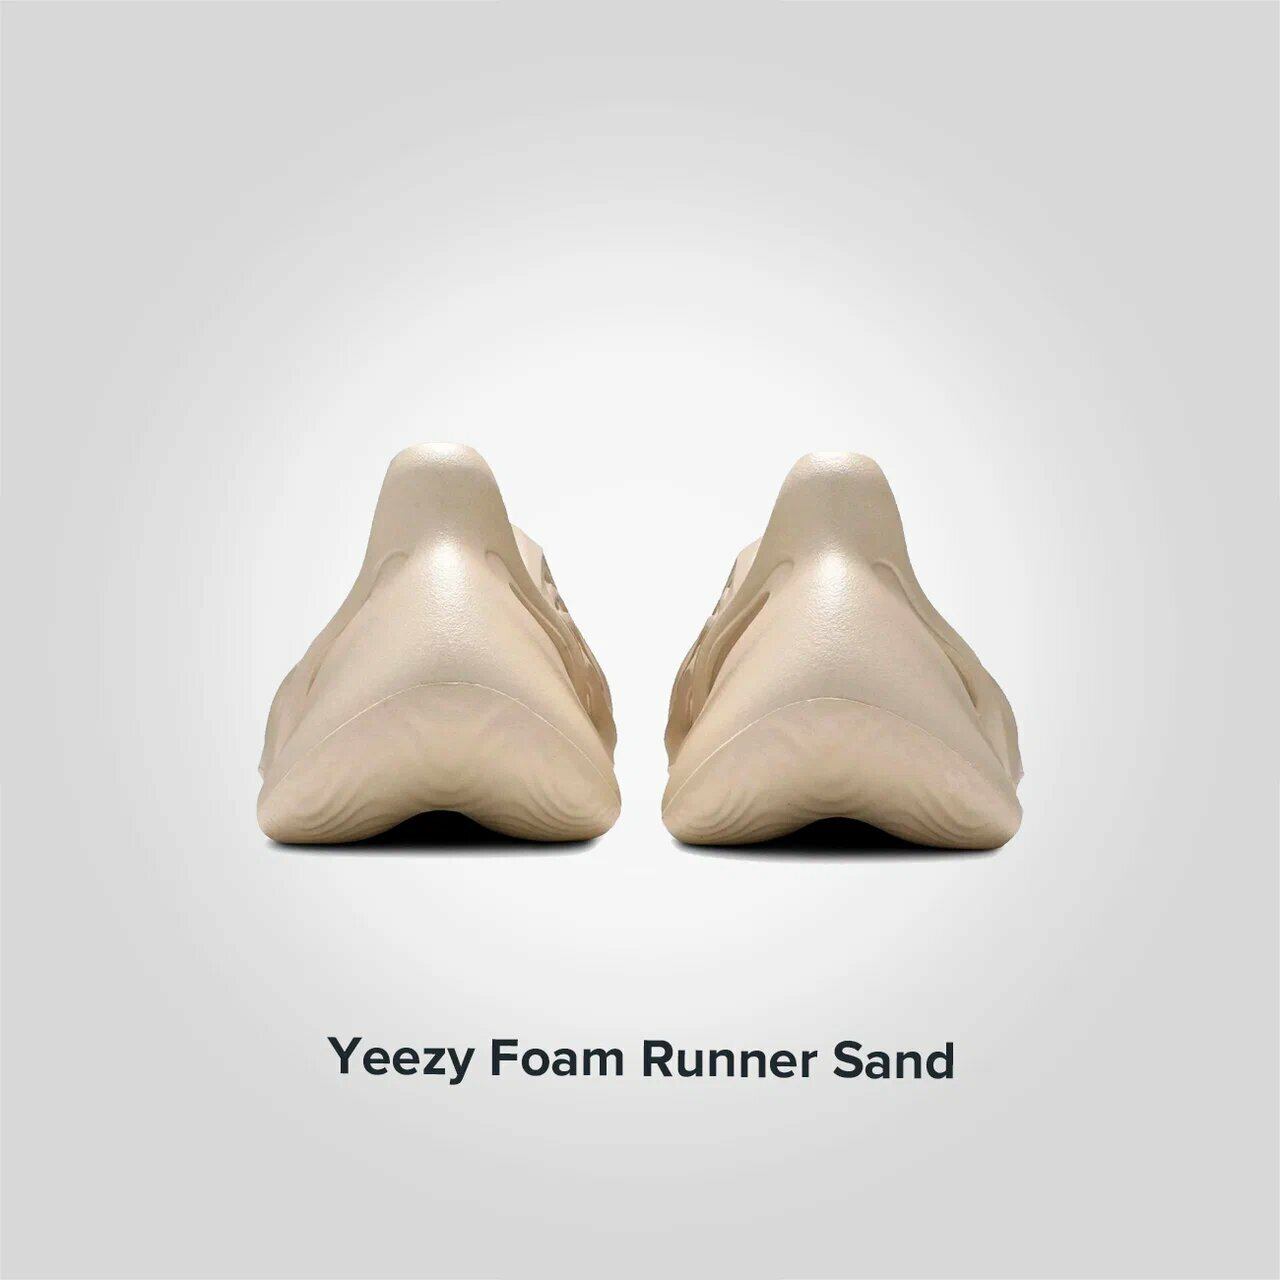 Yeezy Foam Runner Sand